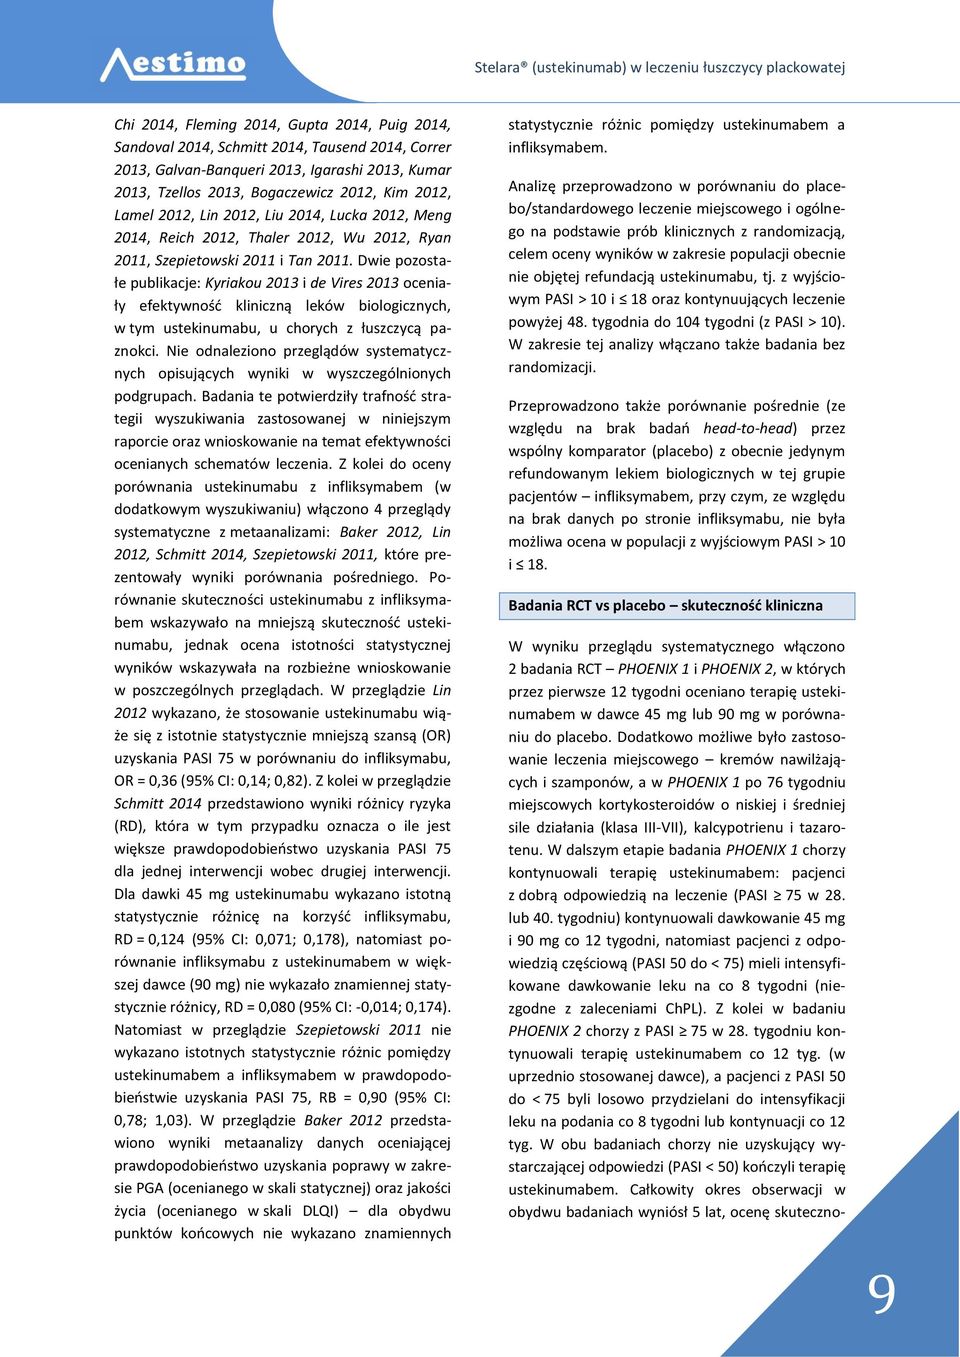 Dwie pozostałe publikacje: Kyriakou 2013 i de Vires 2013 oceniały efektywność kliniczną leków biologicznych, w tym ustekinumabu, u chorych z łuszczycą paznokci.